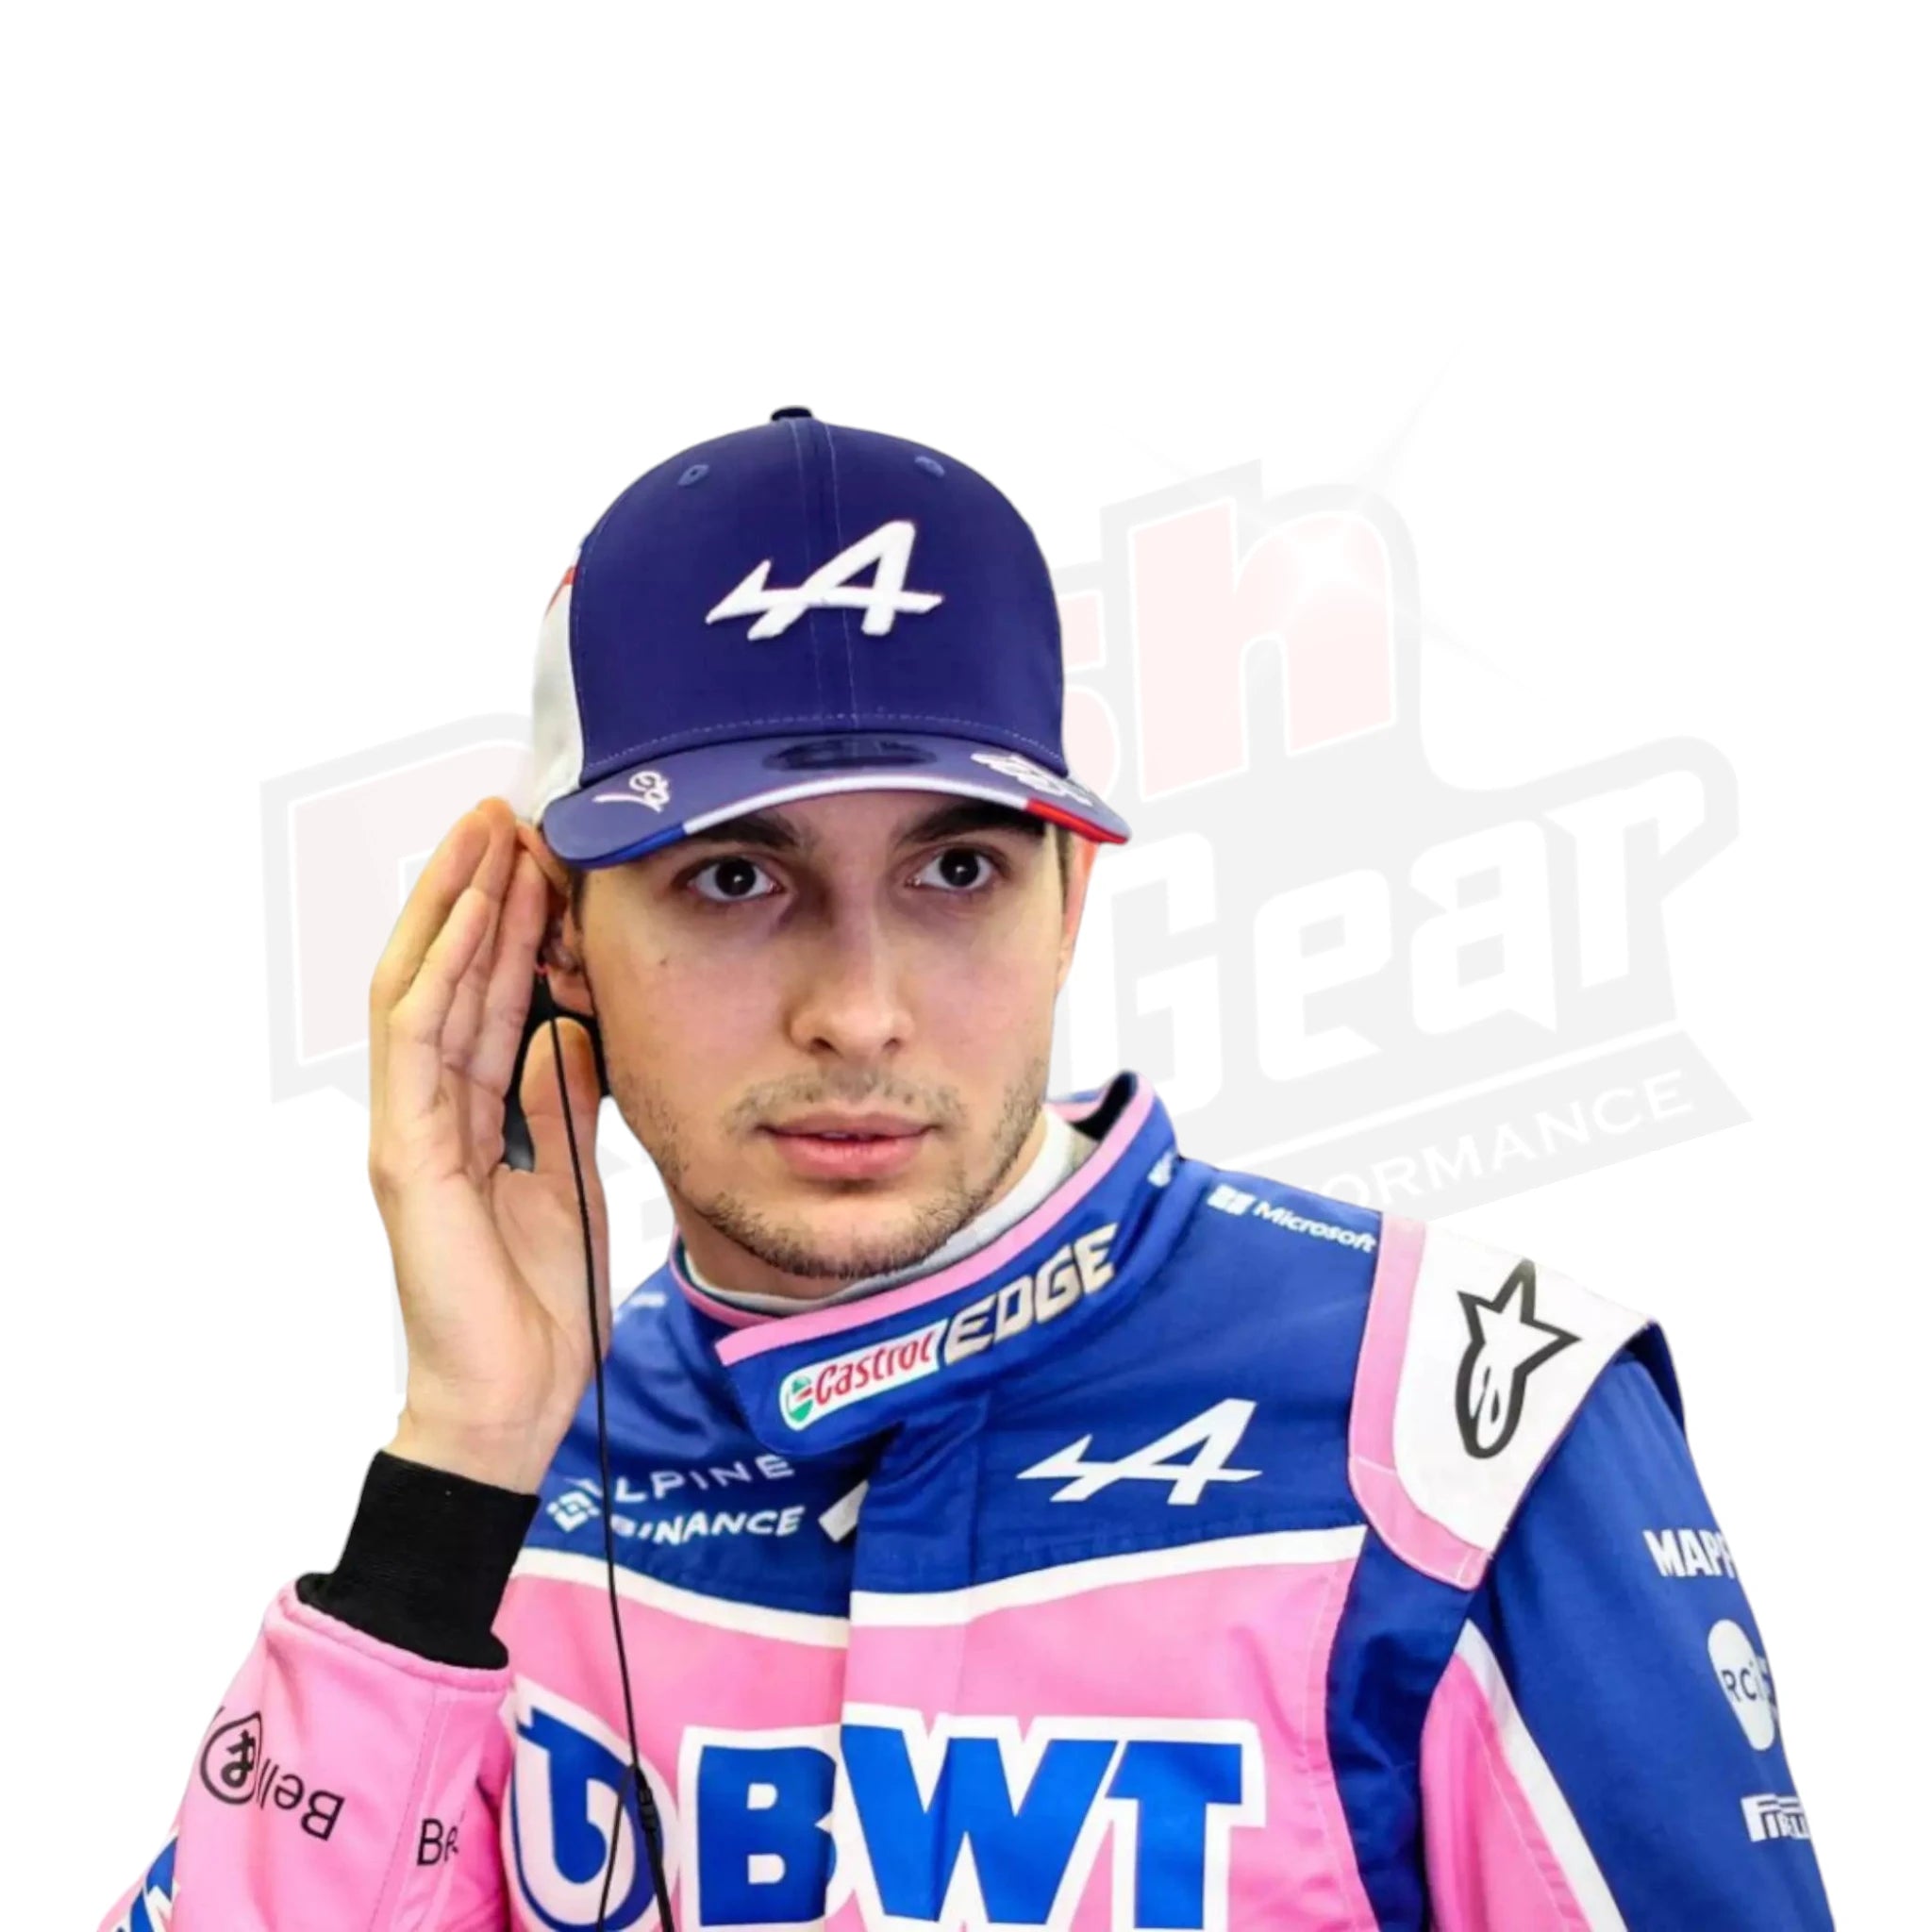 2022 Esteban Ocon Race Suit Australian GP F1